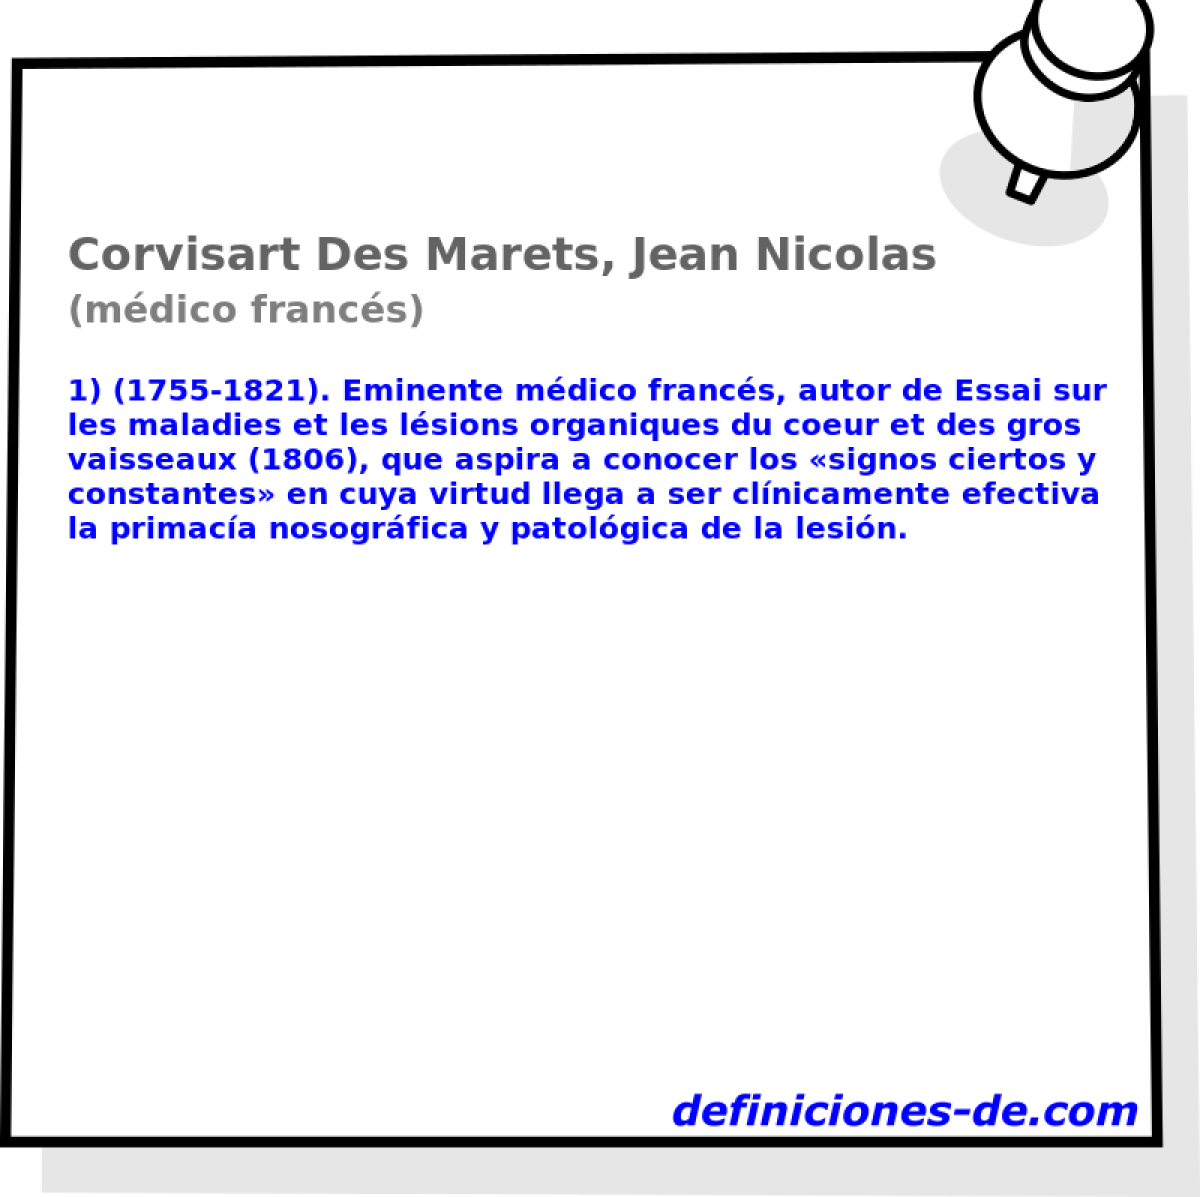 Corvisart Des Marets, Jean Nicolas (mdico francs)